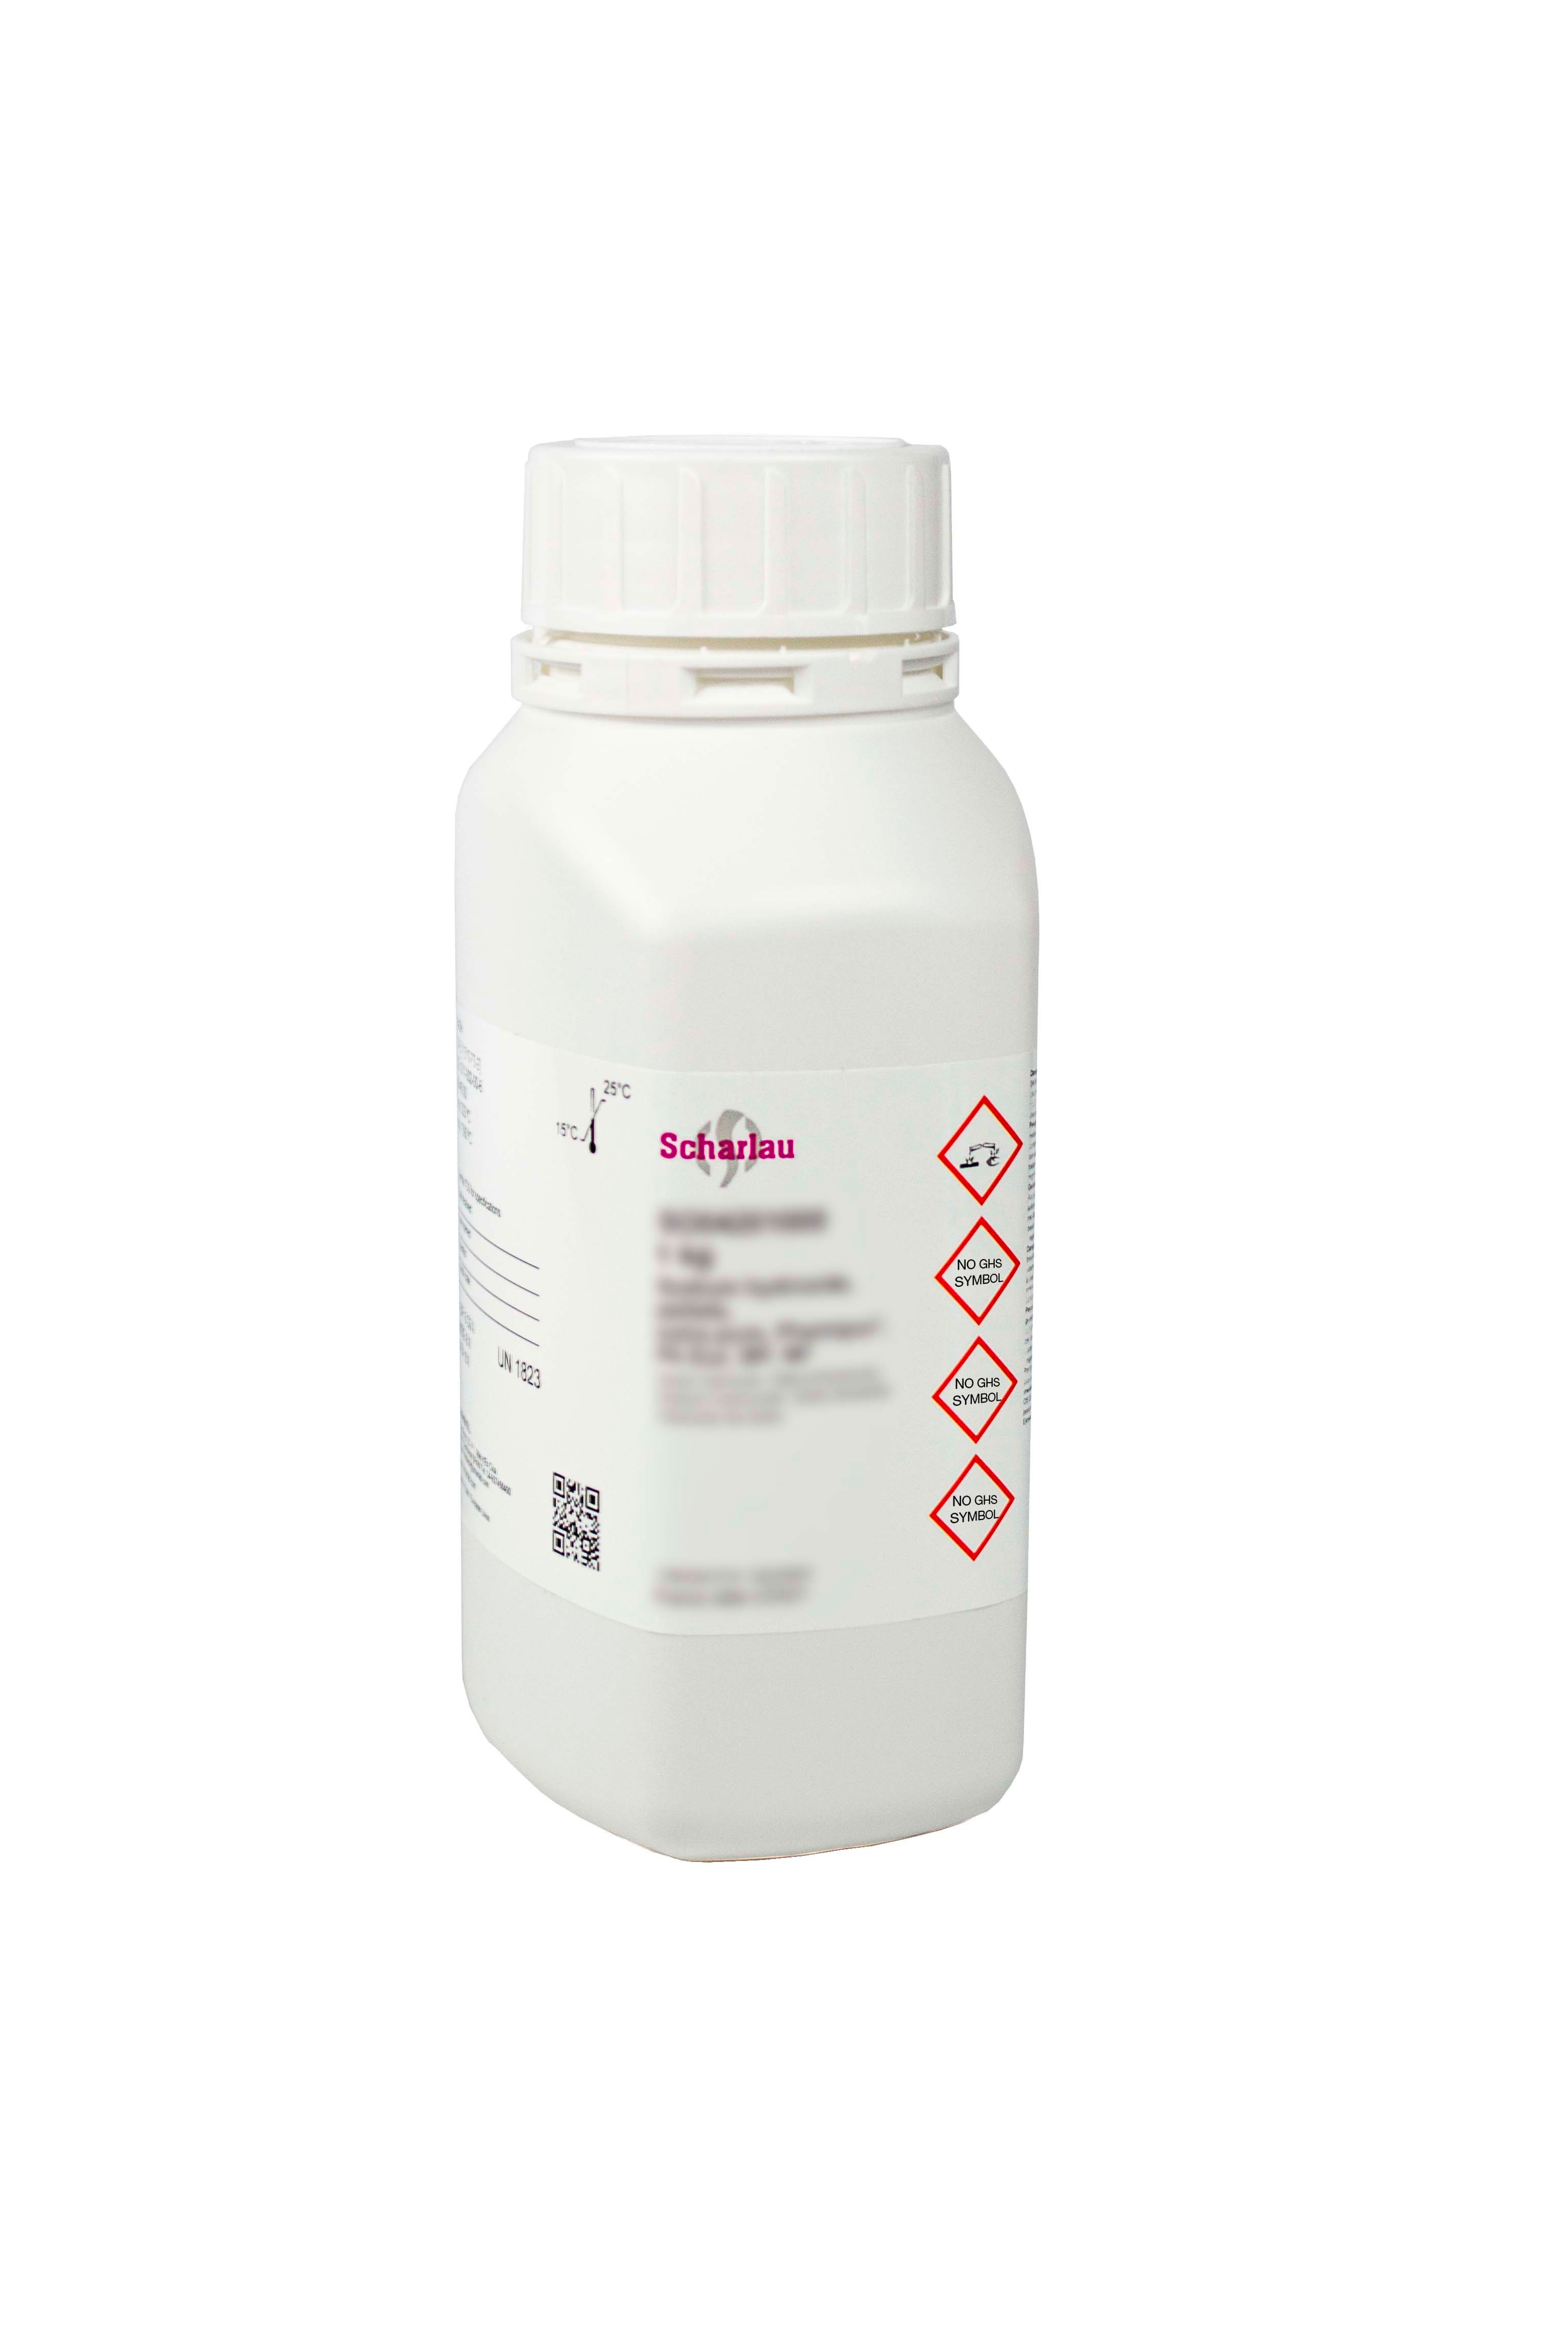 Calcium hydrogen phosphate dihydrate, Pharmpur®, Ph Eur, BP, USP